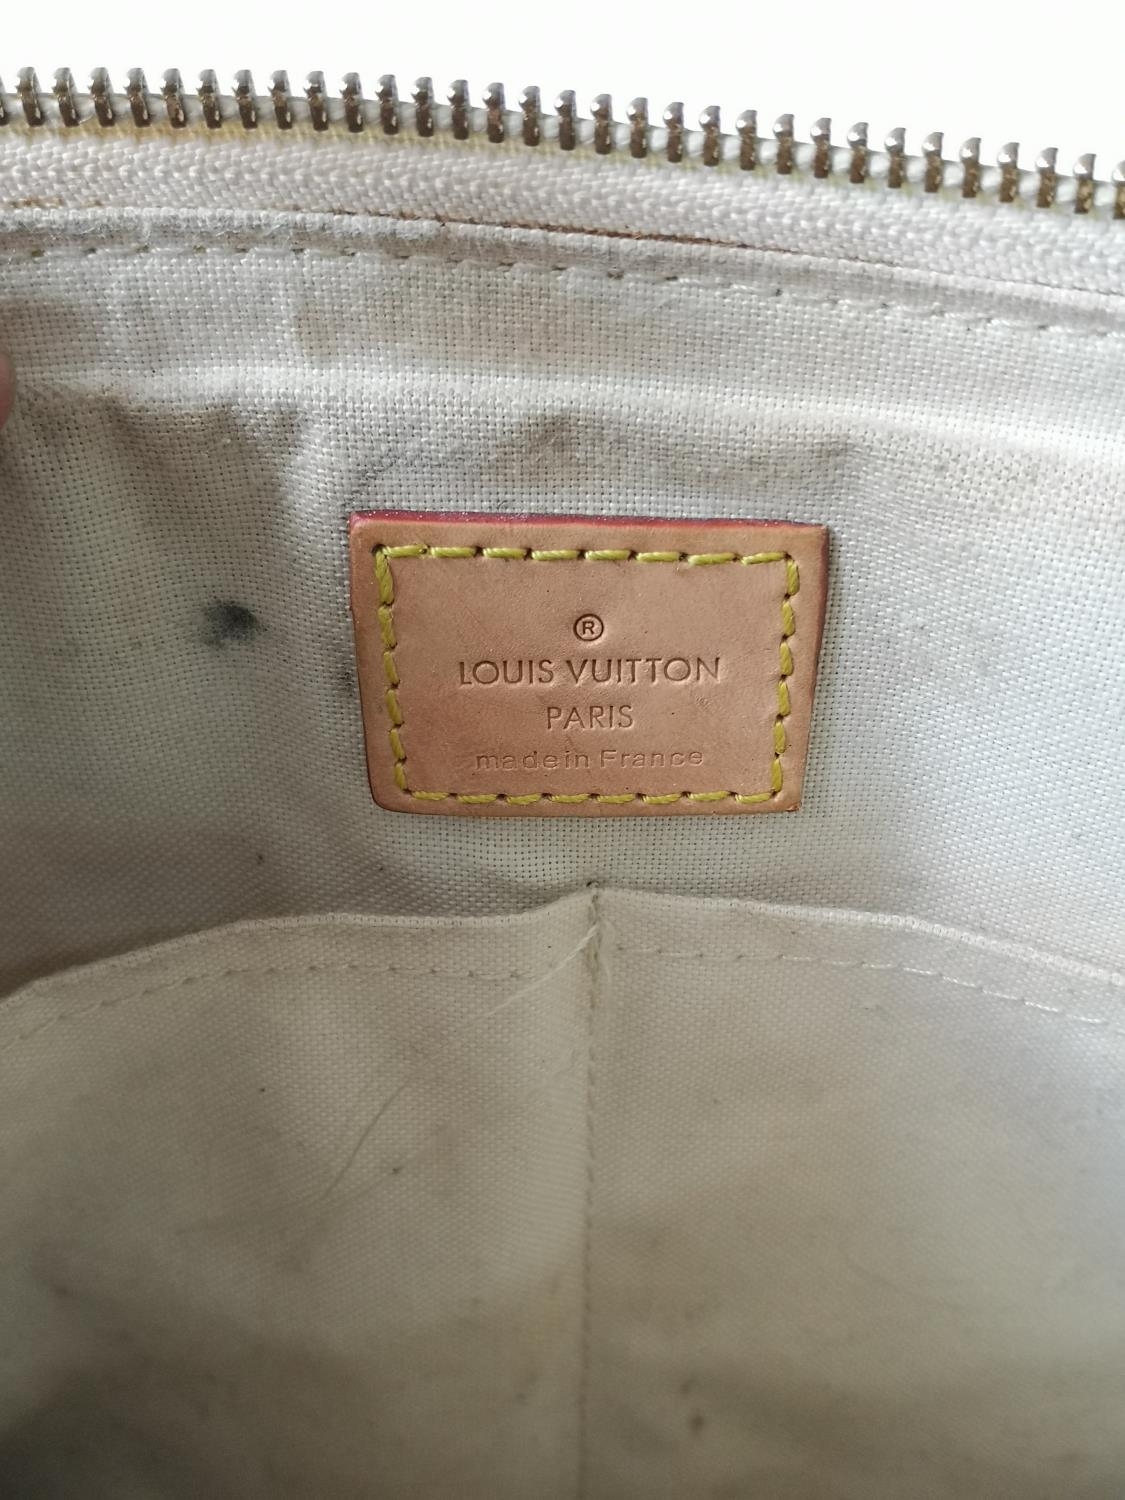 A Louis Vuitton Damier shoulder bag - Image 5 of 6